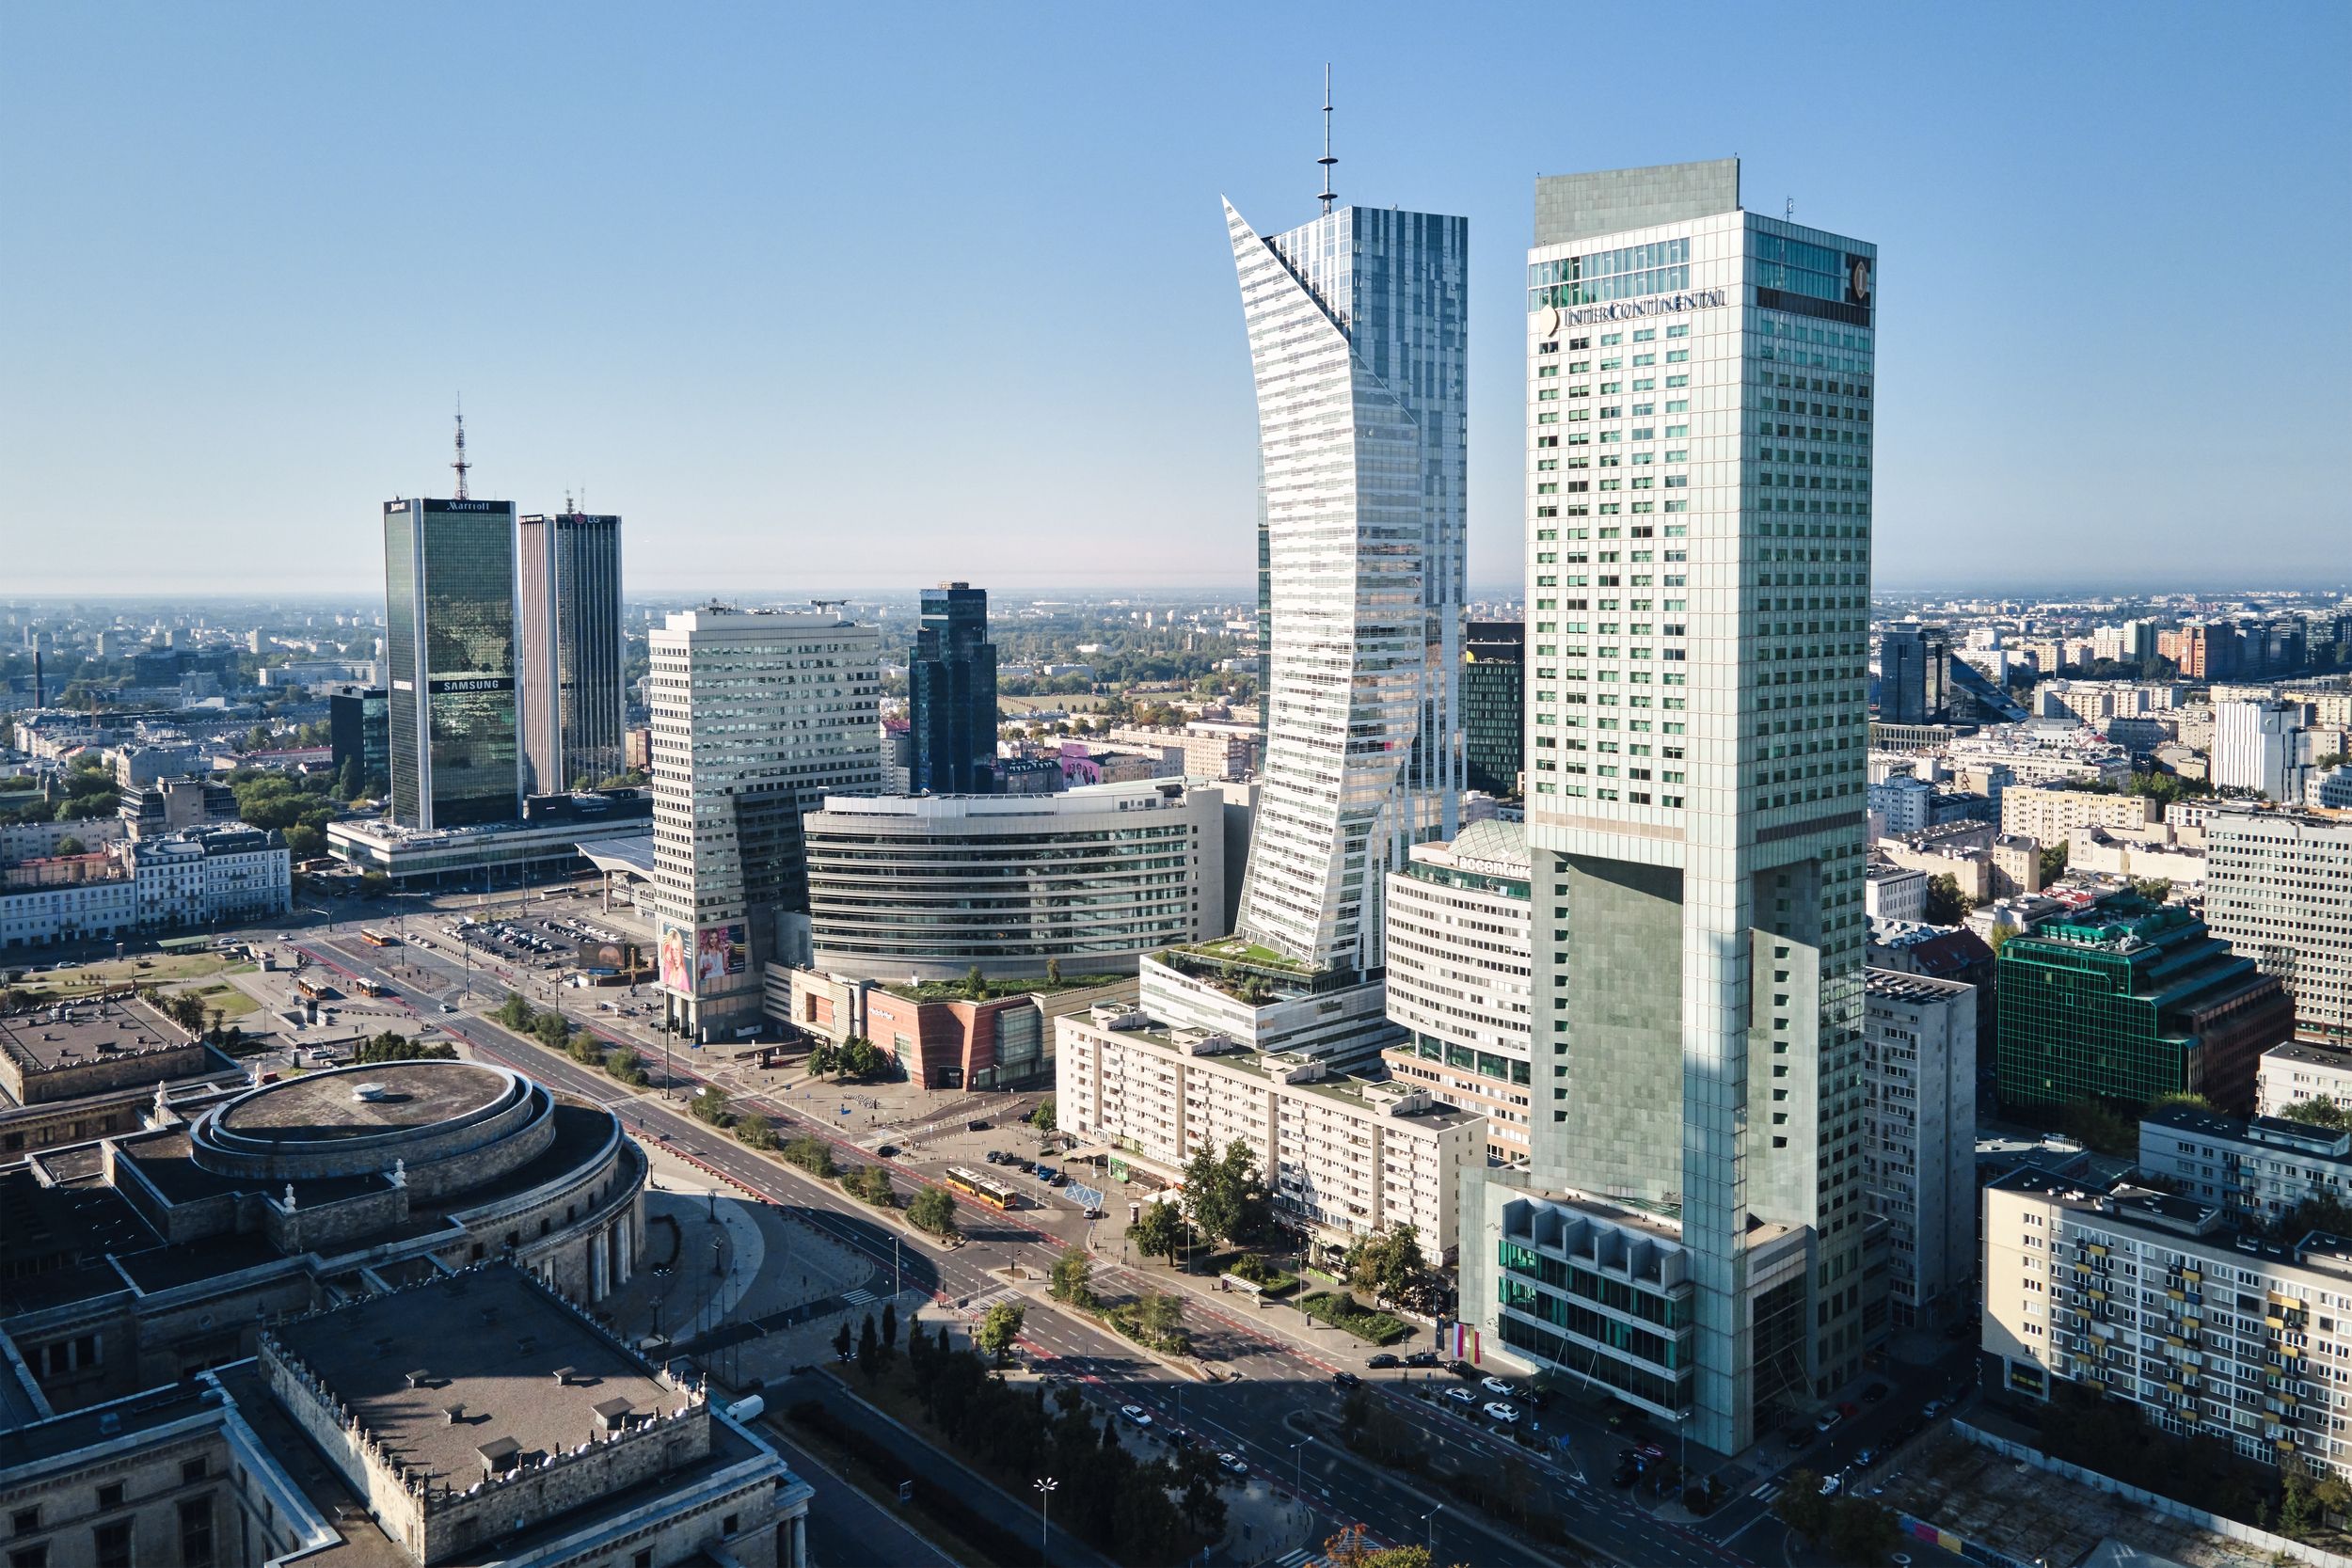 Biurowce w Warszawie, fot. Shutterstock